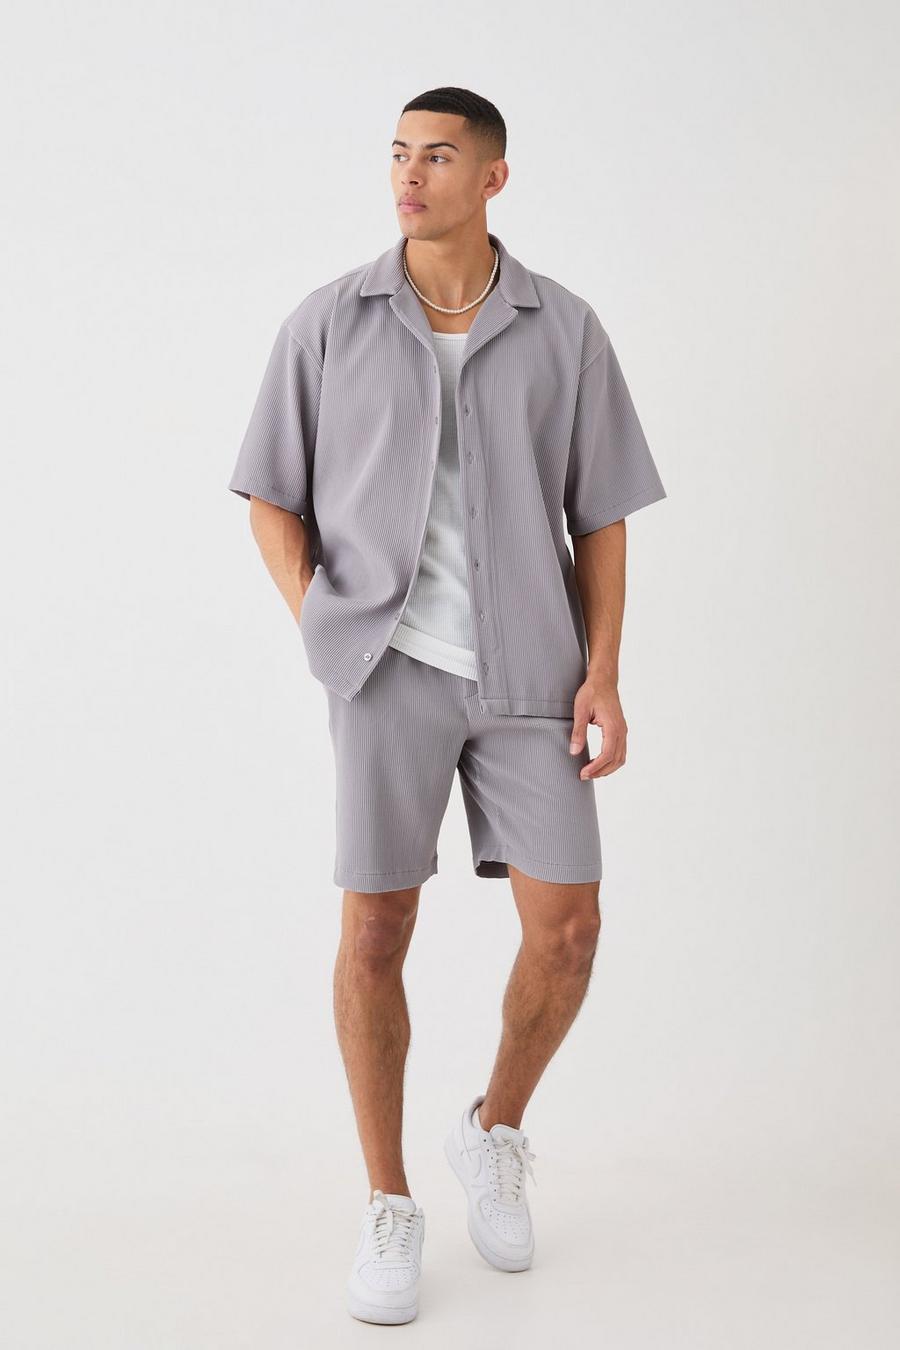 Grey Oversized Short Sleeve Pleated Shirt And Short